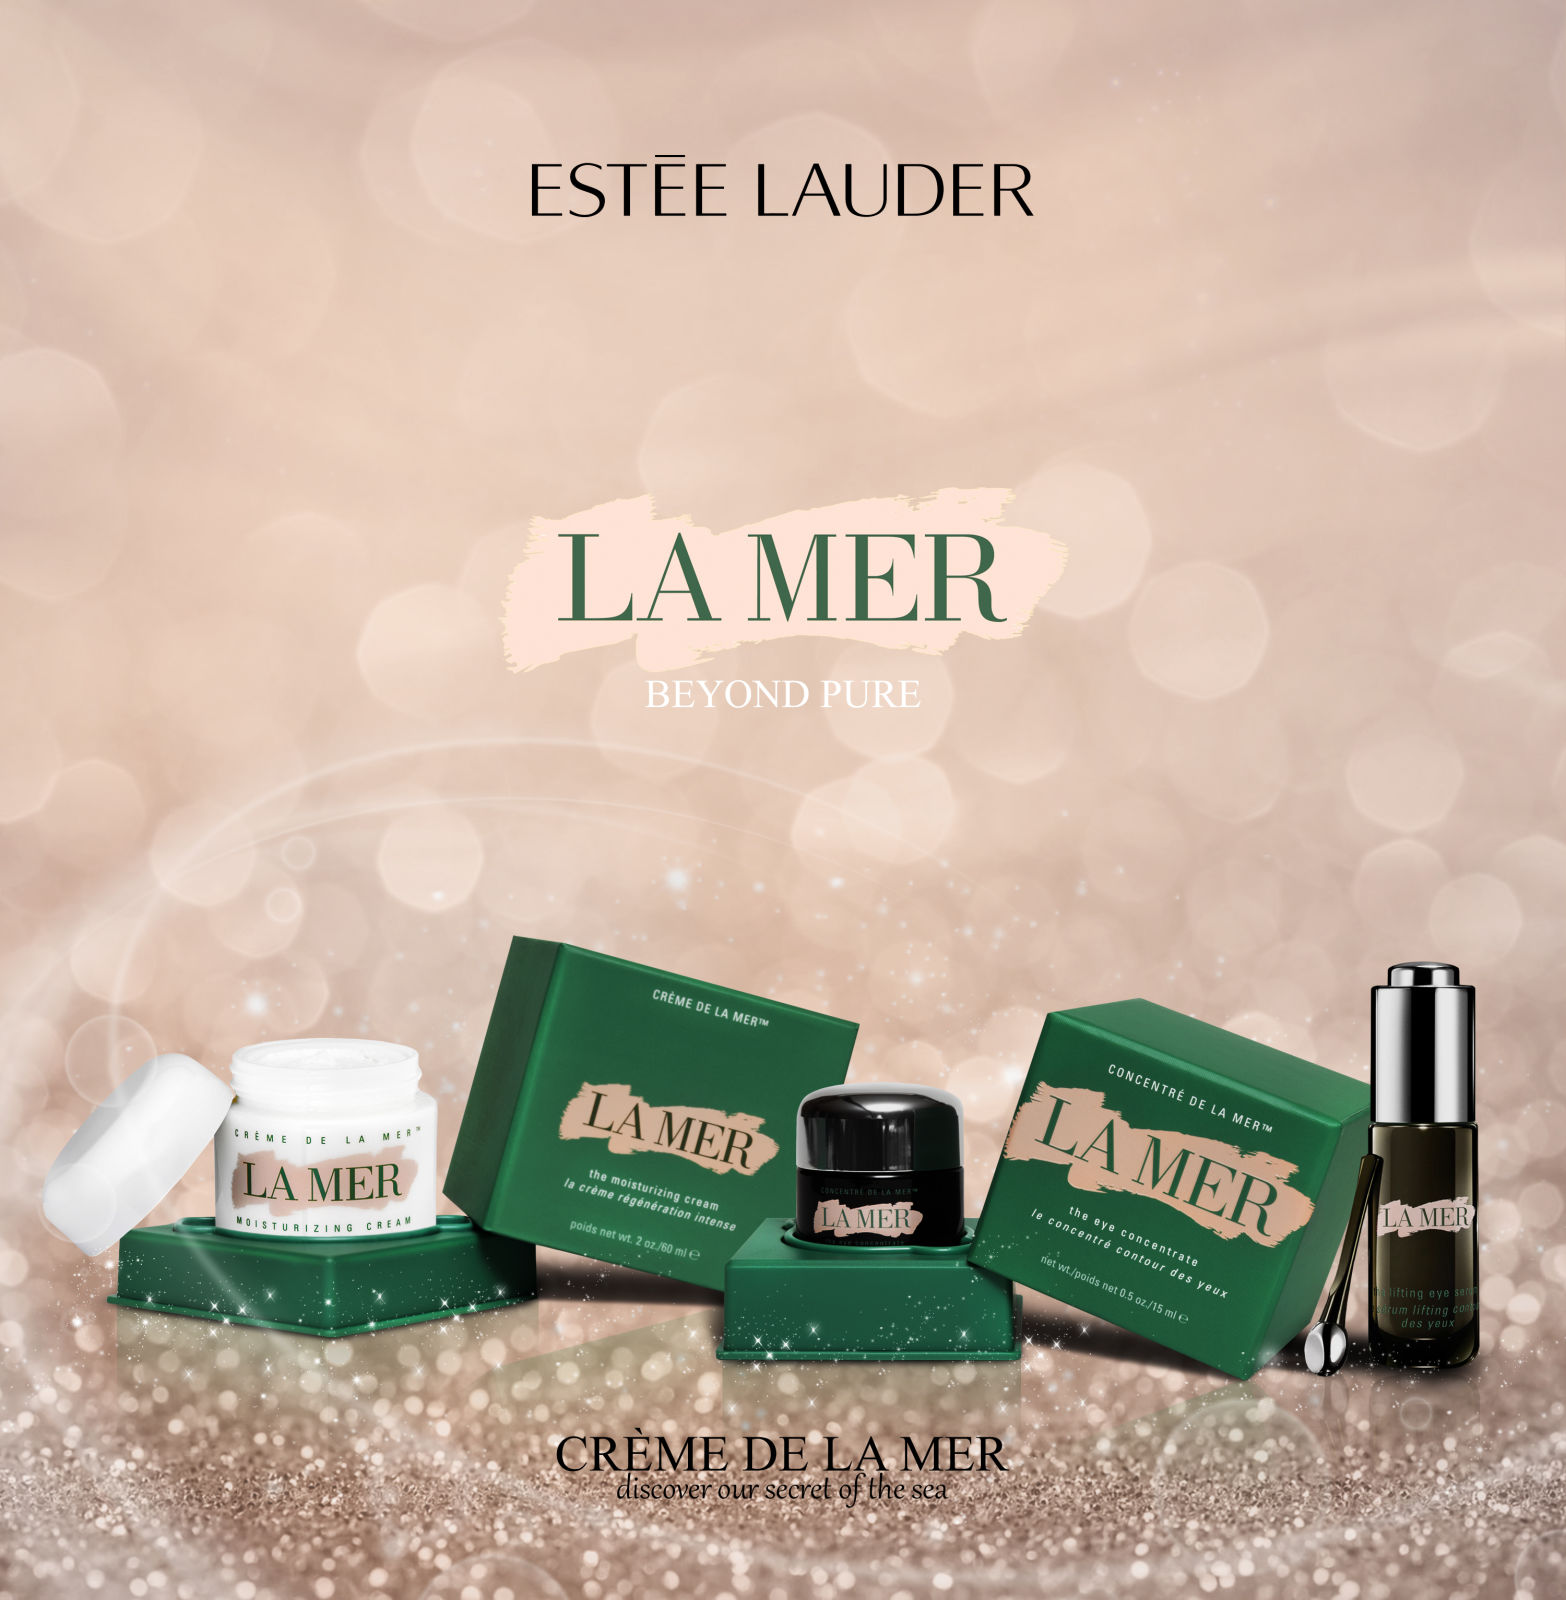 Estee Lauder packaging design